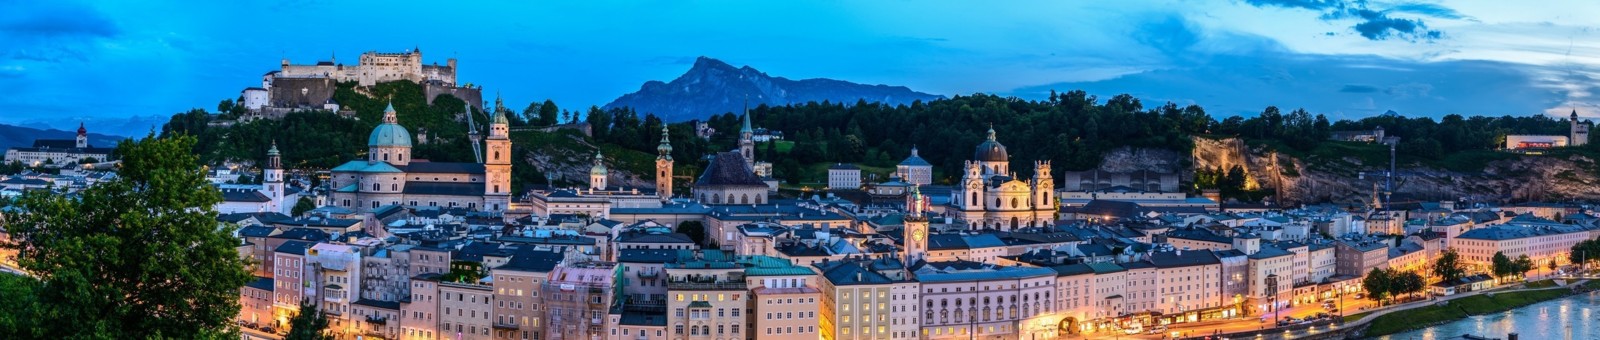     Panorama of Salzburg by night 